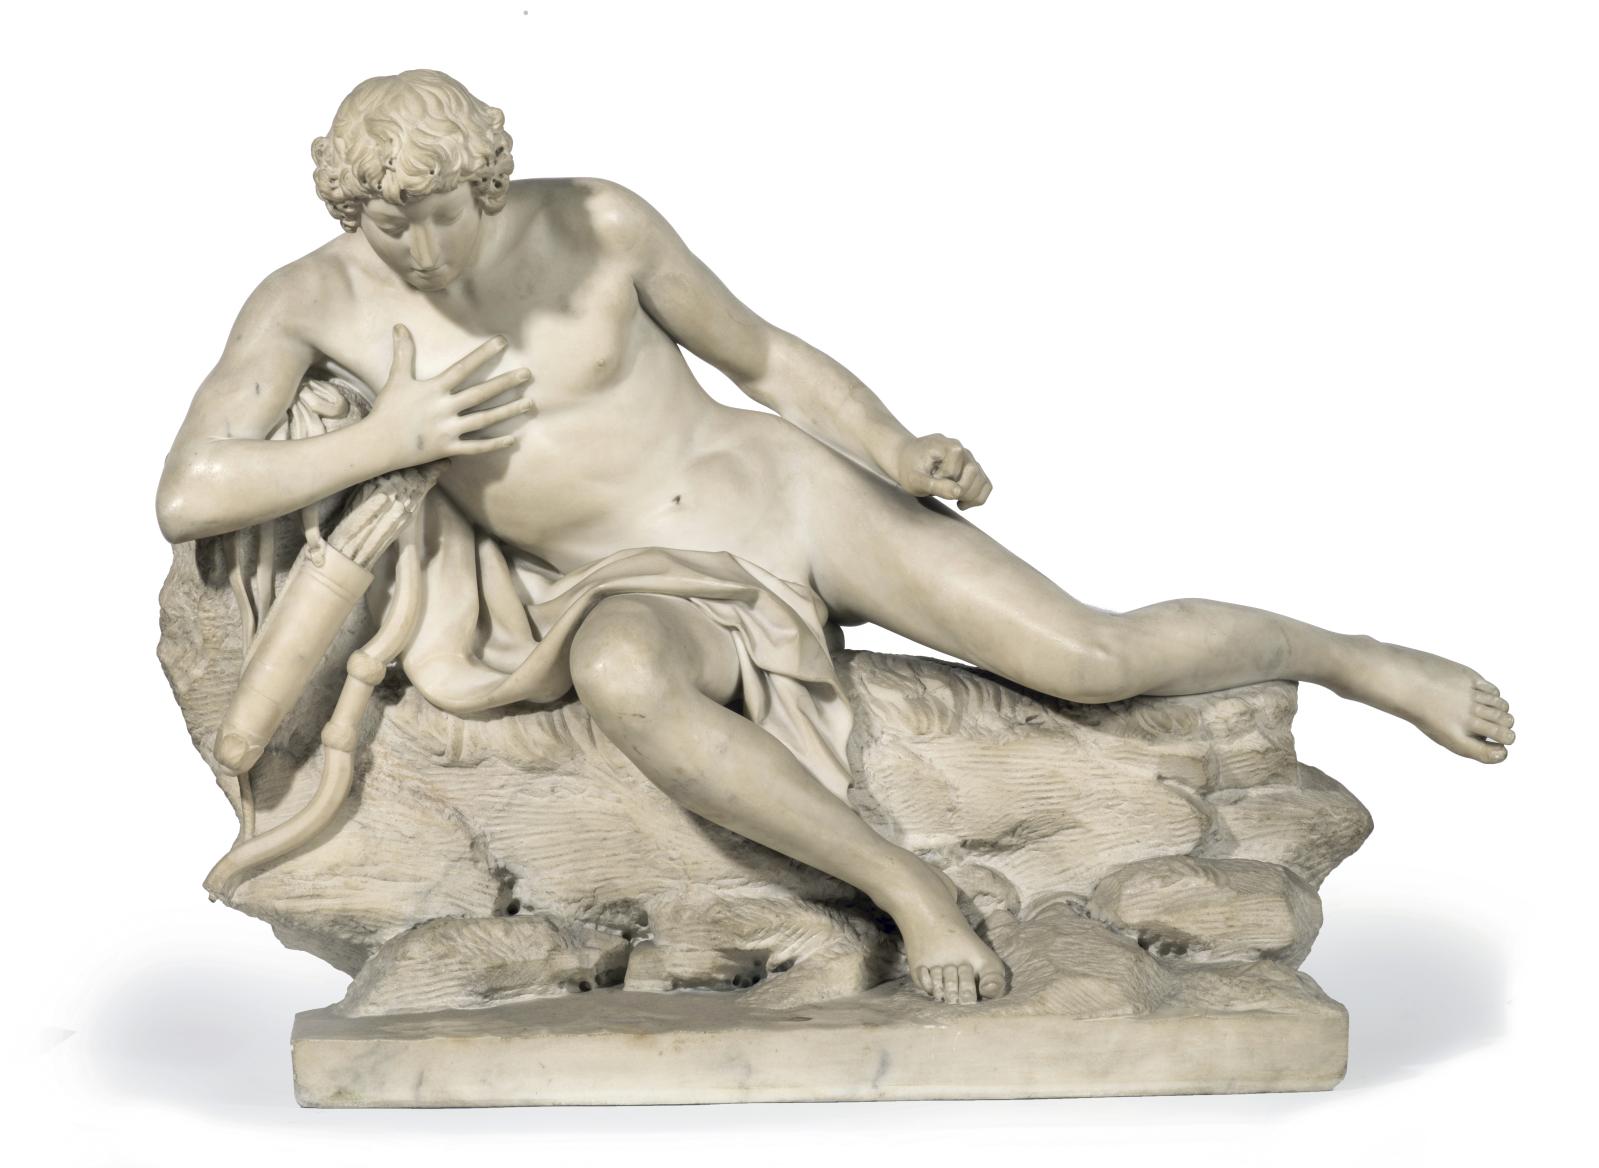 La sculpture française du XVIIIe siècle, fière de se voir si convoitée